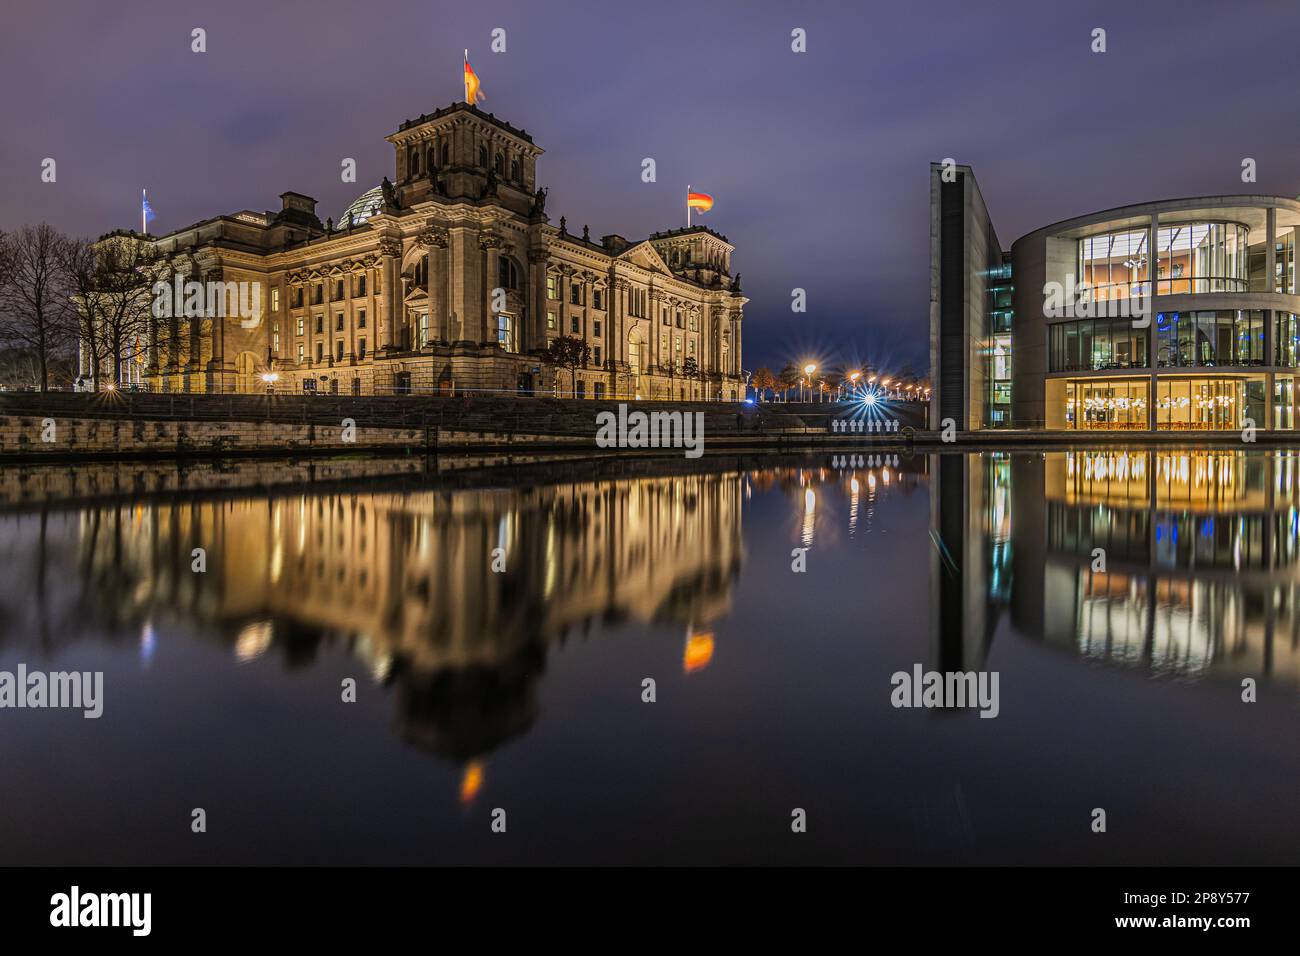 Blick auf Regierungsgebäude bei Nacht. Reichstag in Berlin zur blauen Stunde. Beleuchtete historische Gebäude. Spree mit Reflexion auf dem Wasser Stockfoto